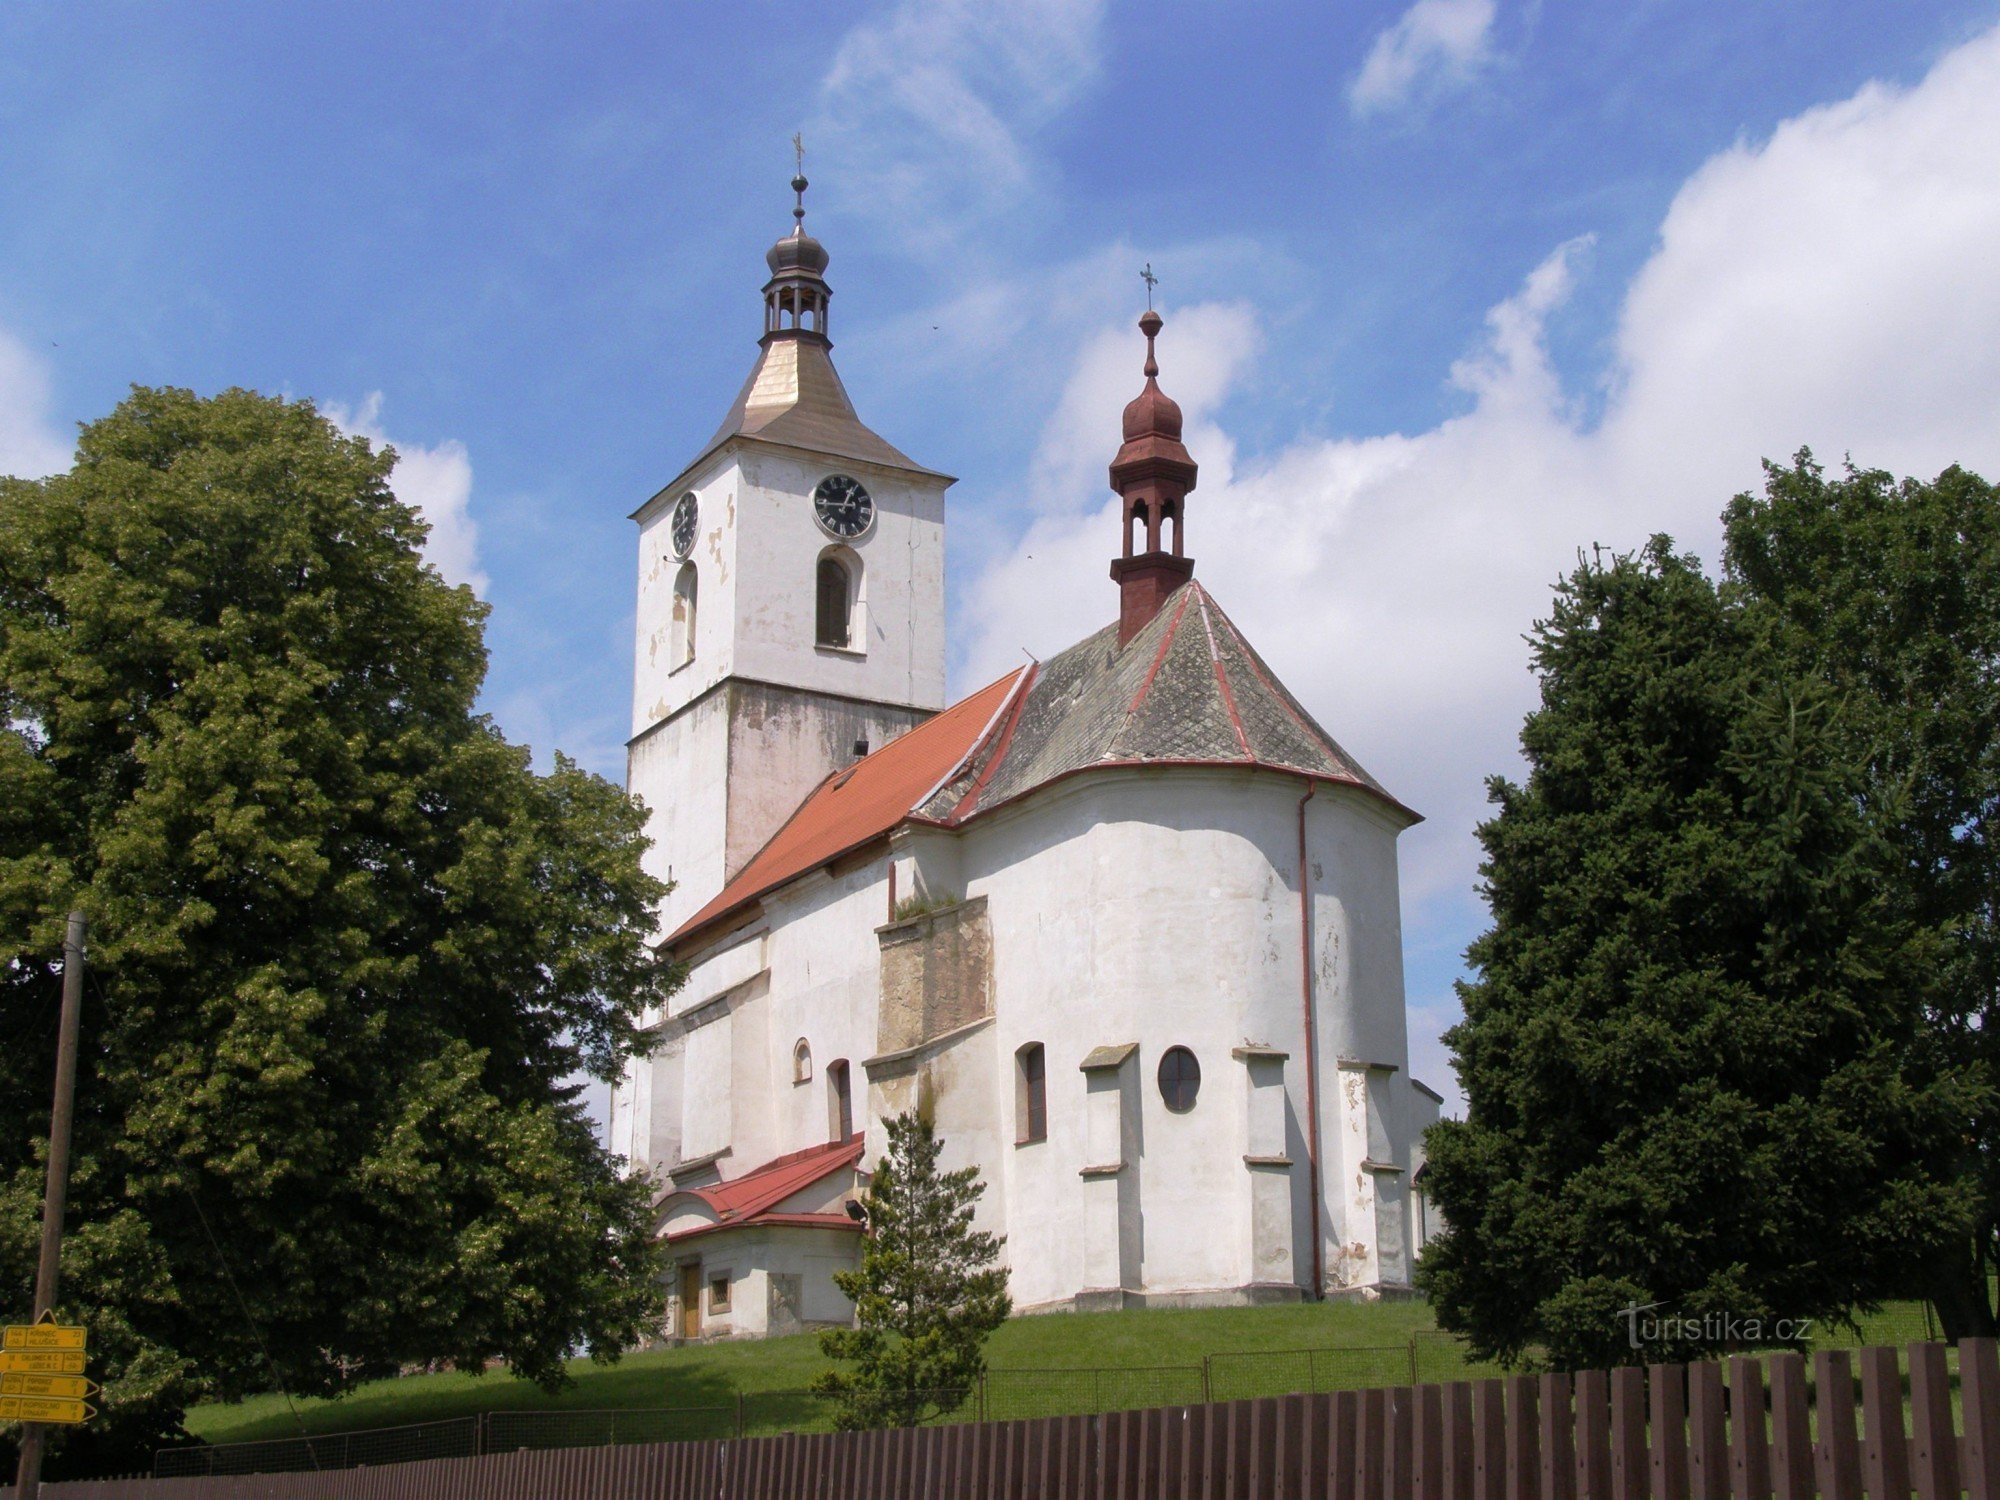 Starý Bydžov - church of St. Procopius